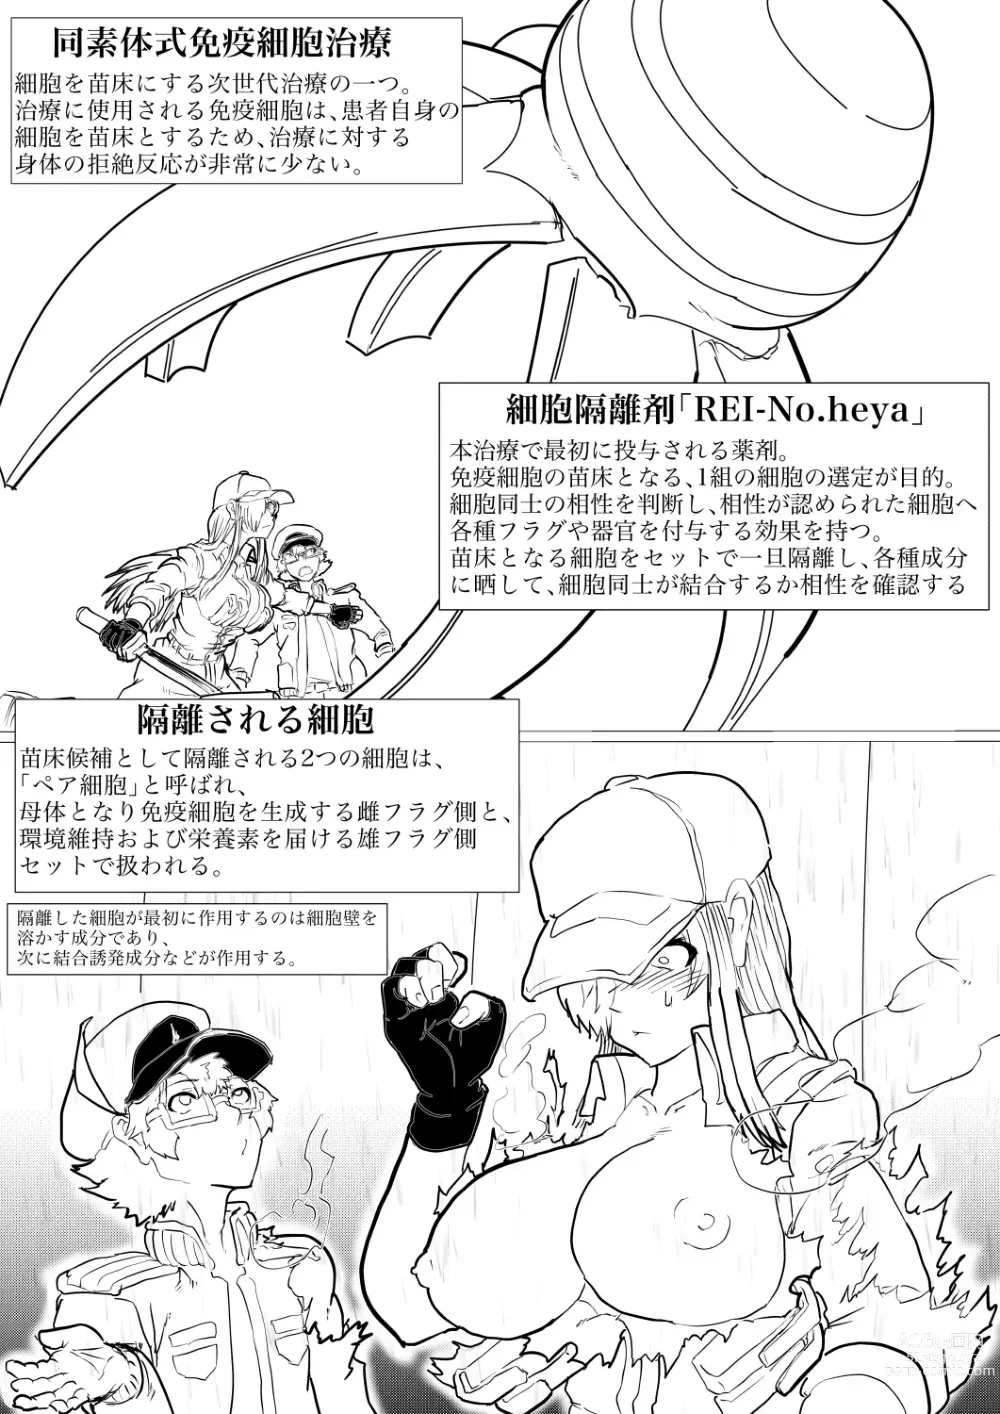 Page 2 of doujinshi Dai 1-ki chiryo-yo no kiki kosei